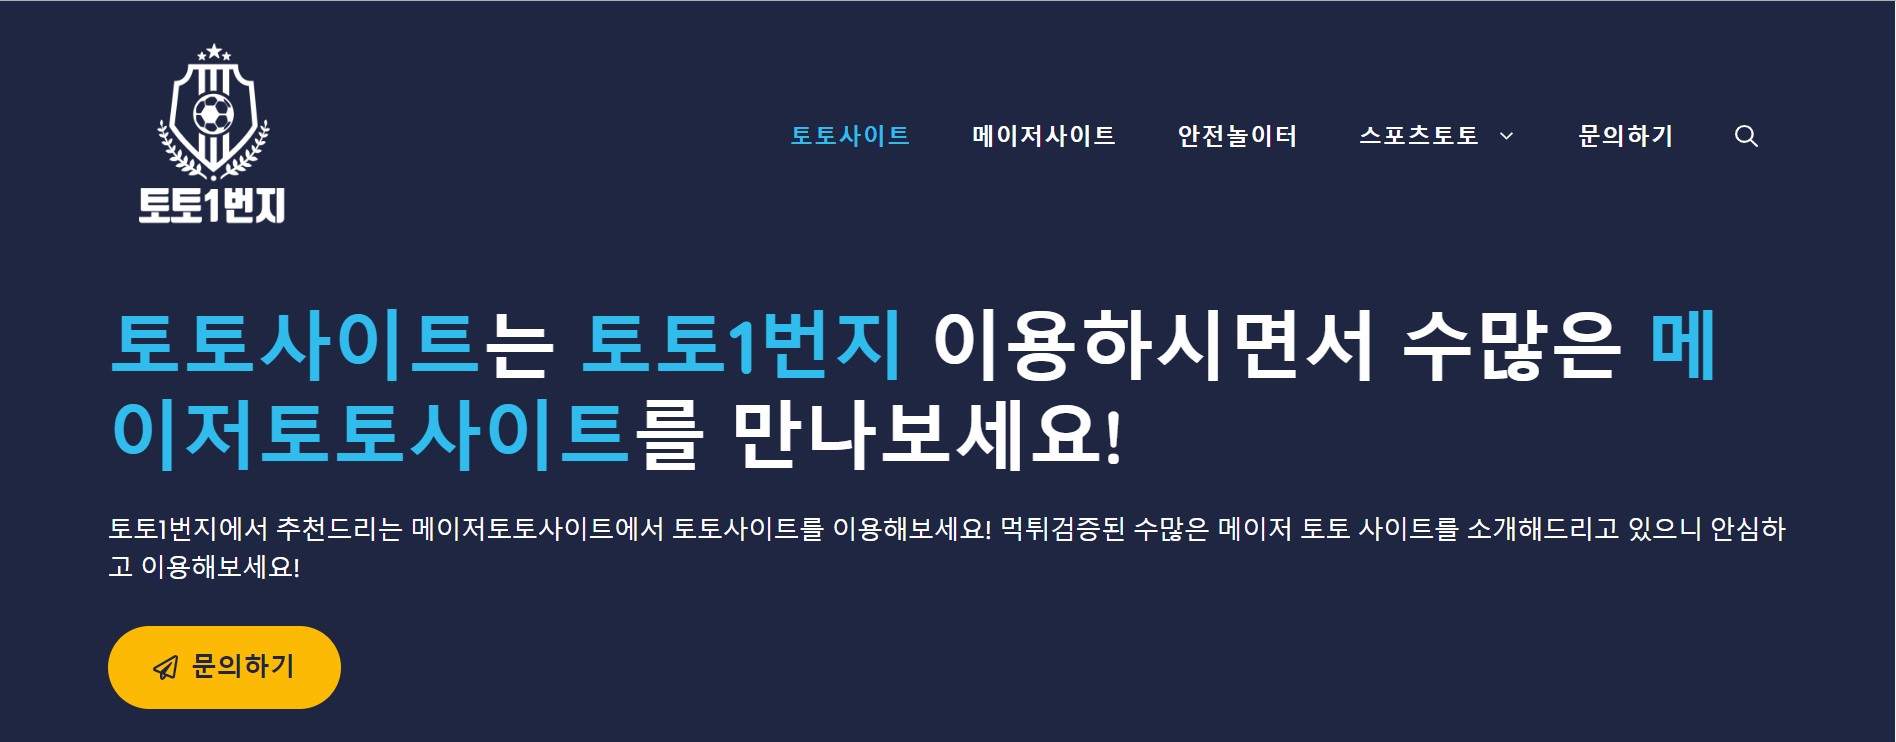 온라인 스포츠 베팅 vs. 한국의 오프라인 스포츠 베팅